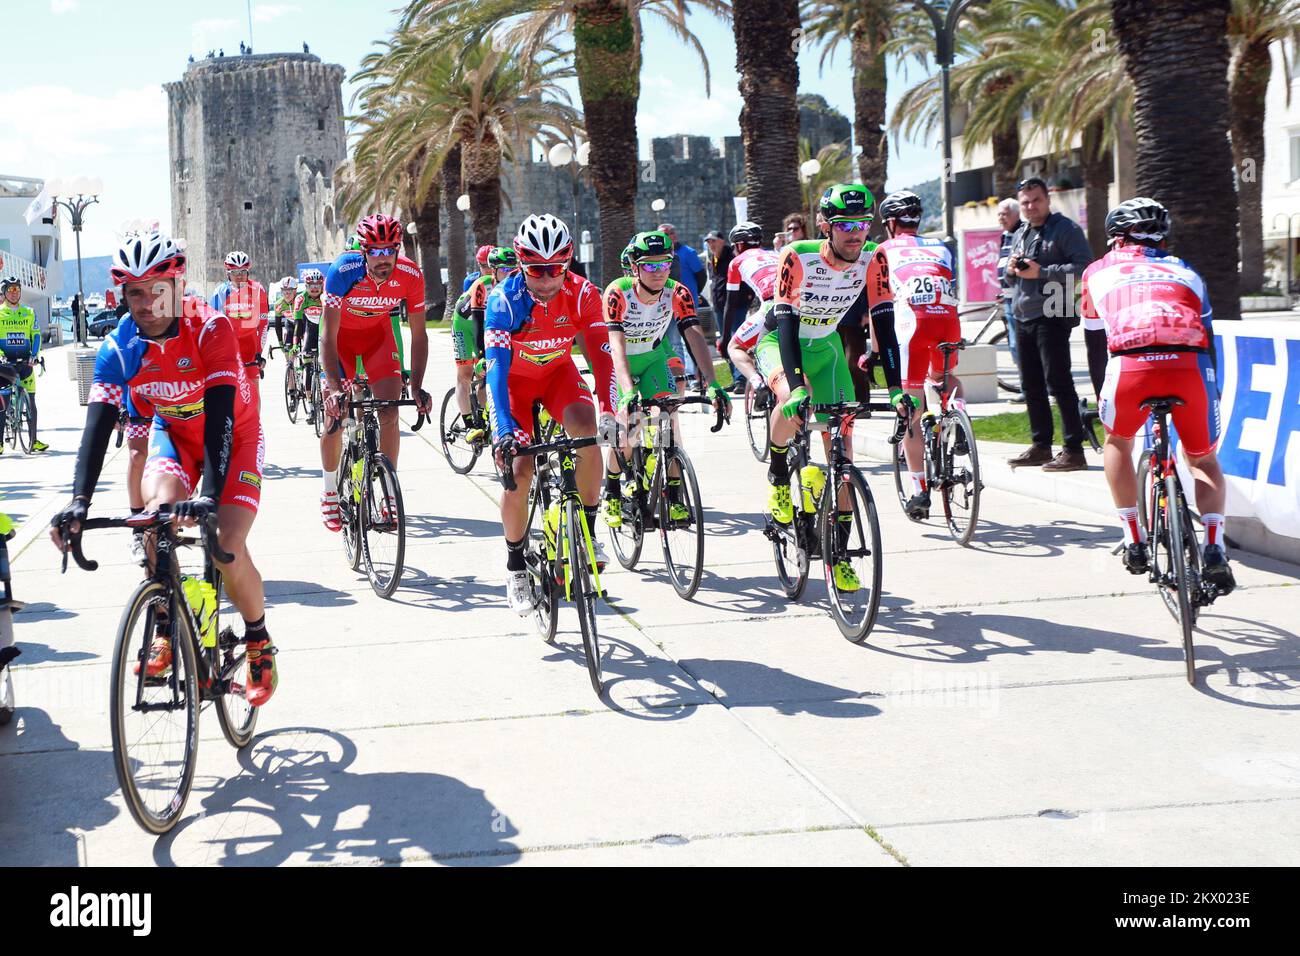 19.04.2017., Trogir, Croacia - Carrera internacional de ciclismo El Tour de Croacia se llevará a cabo por tercer año consecutivo, desde el 18-23 de abril de 2017 a través de seis etapas en la ruta de más de 1.000 kilómetros por toda Croacia. Foto: Miranda Cikotic/PIXSELL Foto de stock